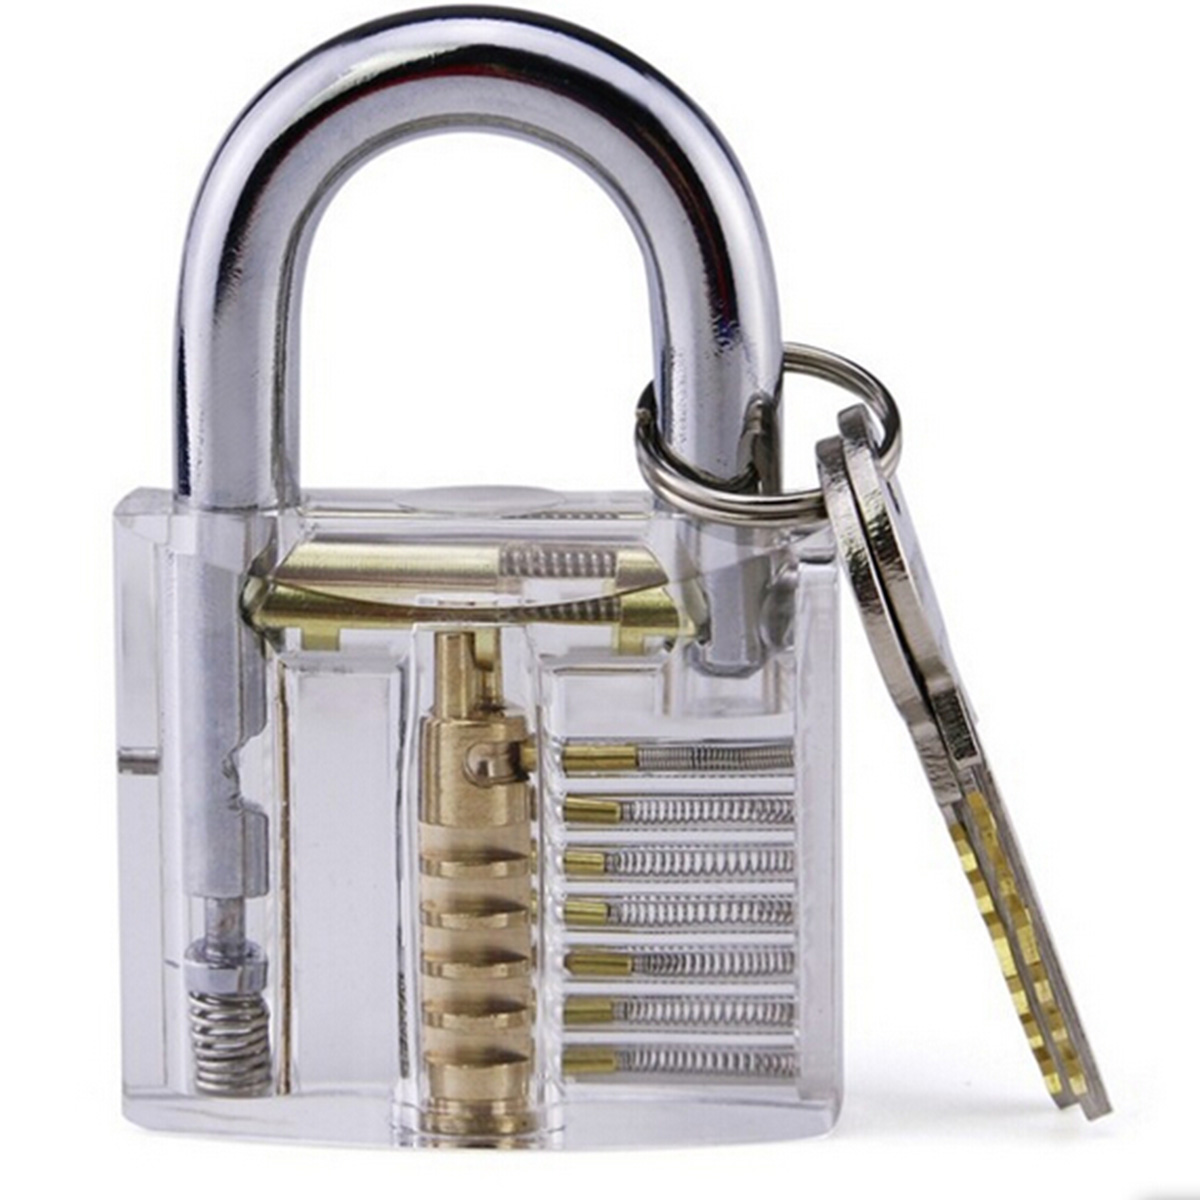 Transparante Zichtbaar Pick Cutaway Praktijk Hangslot Lock Met Gebroken Sleutel Verwijderen Haak Kit Extractor Set Slotenmaker Wrench Tool